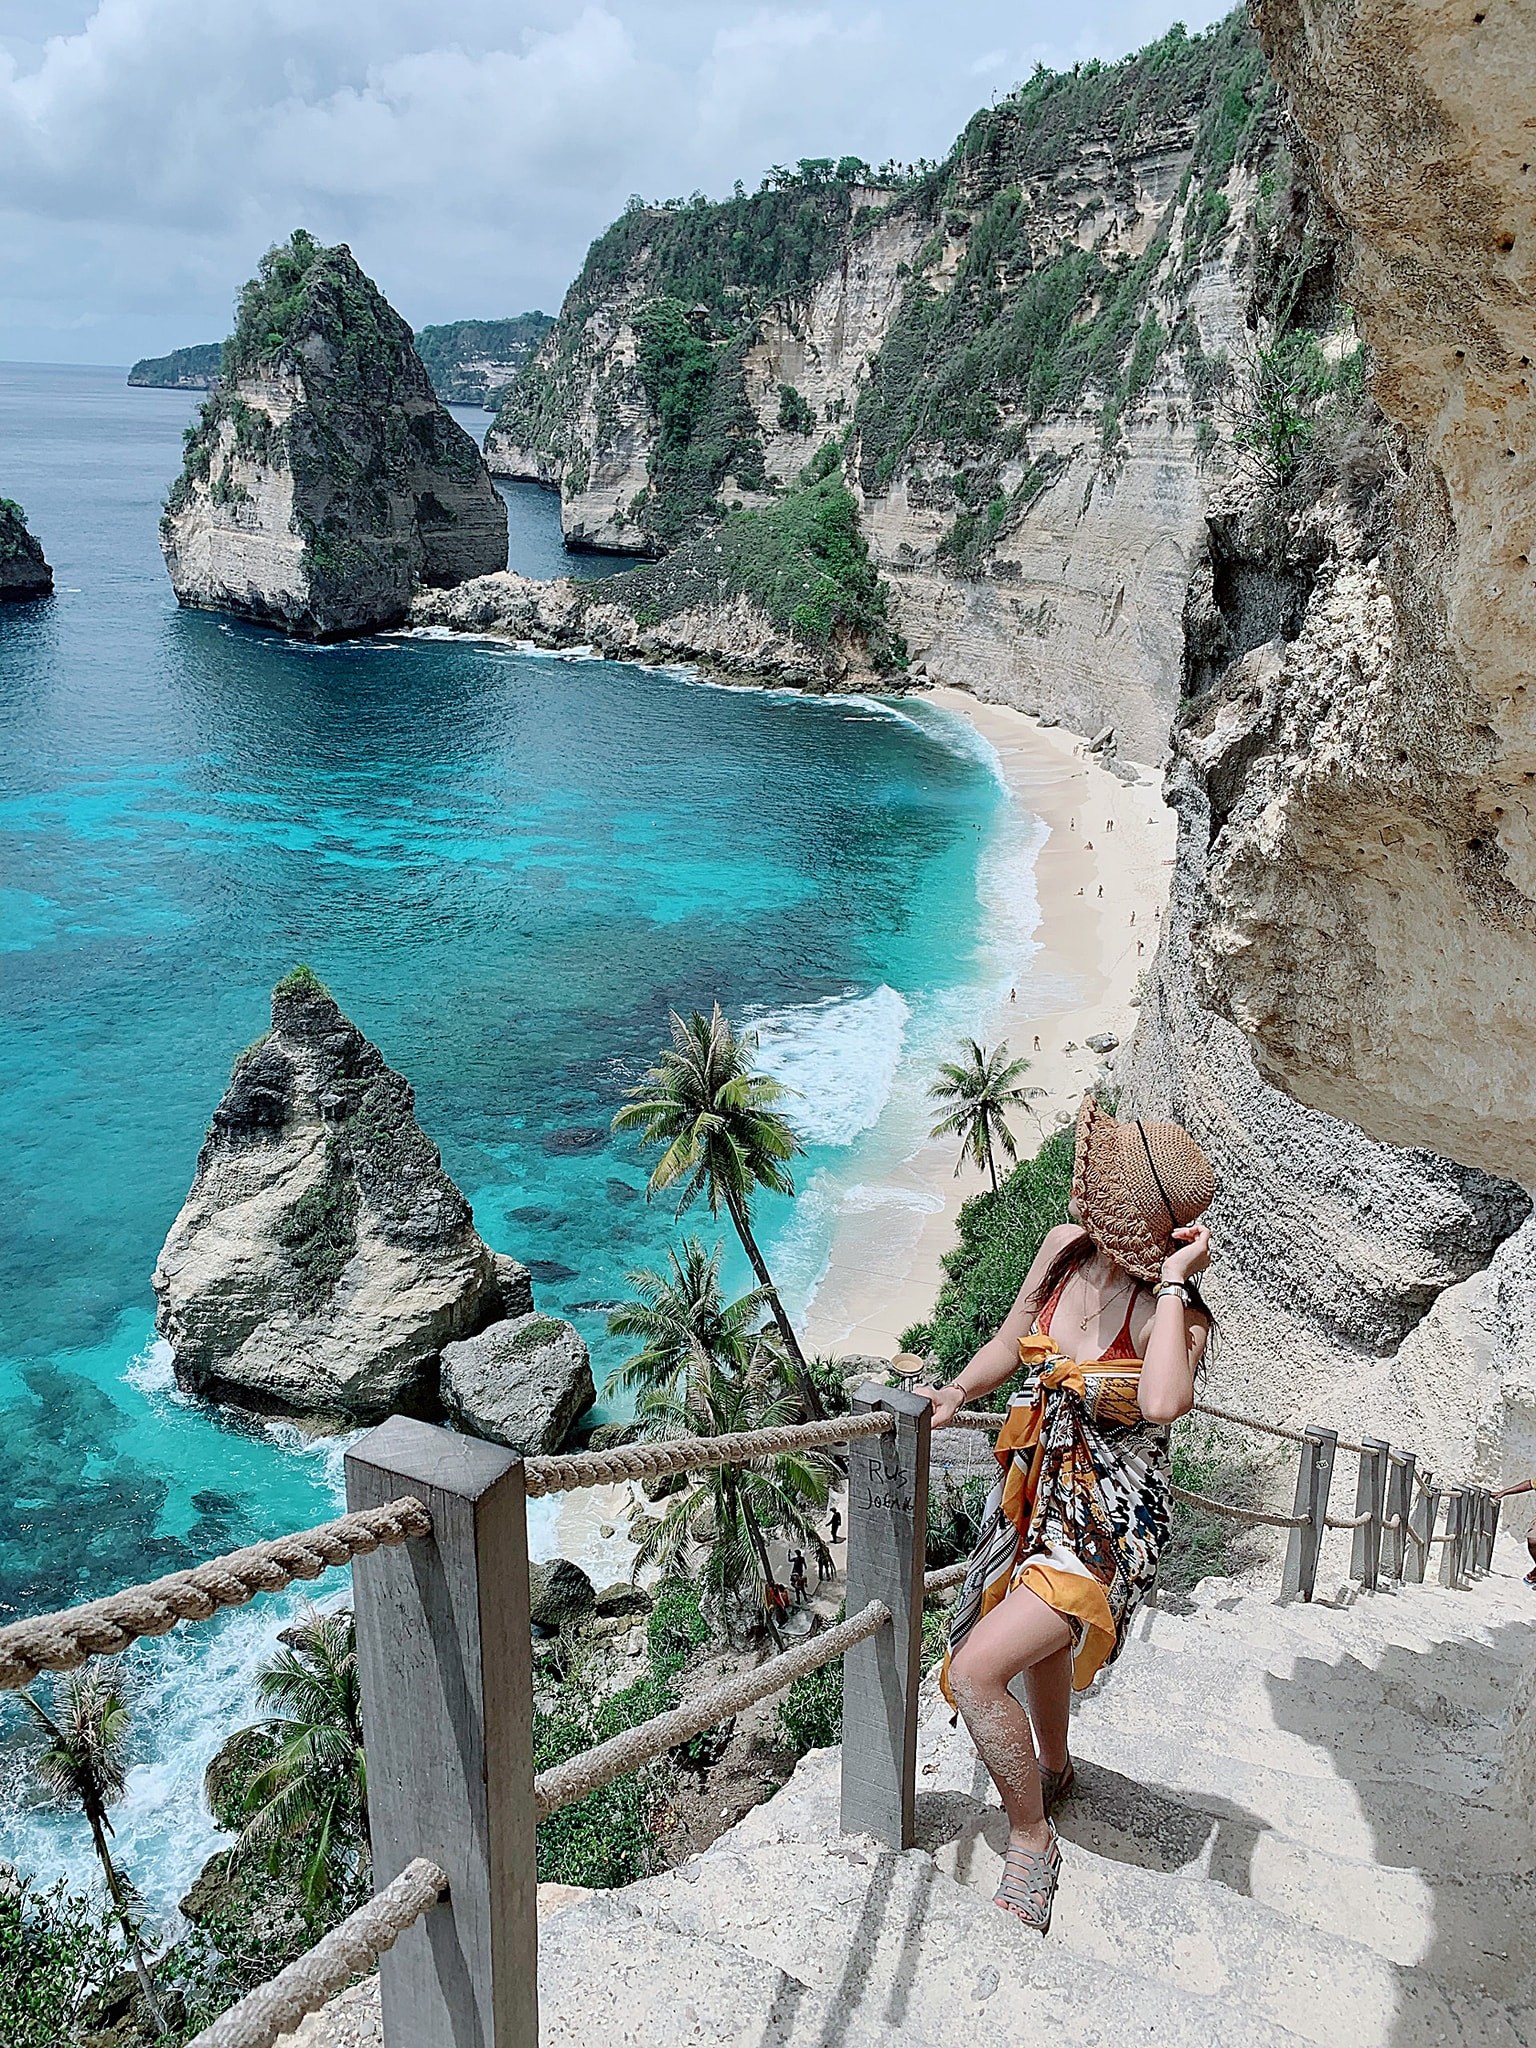 Tour du lịch châu Á - Bali